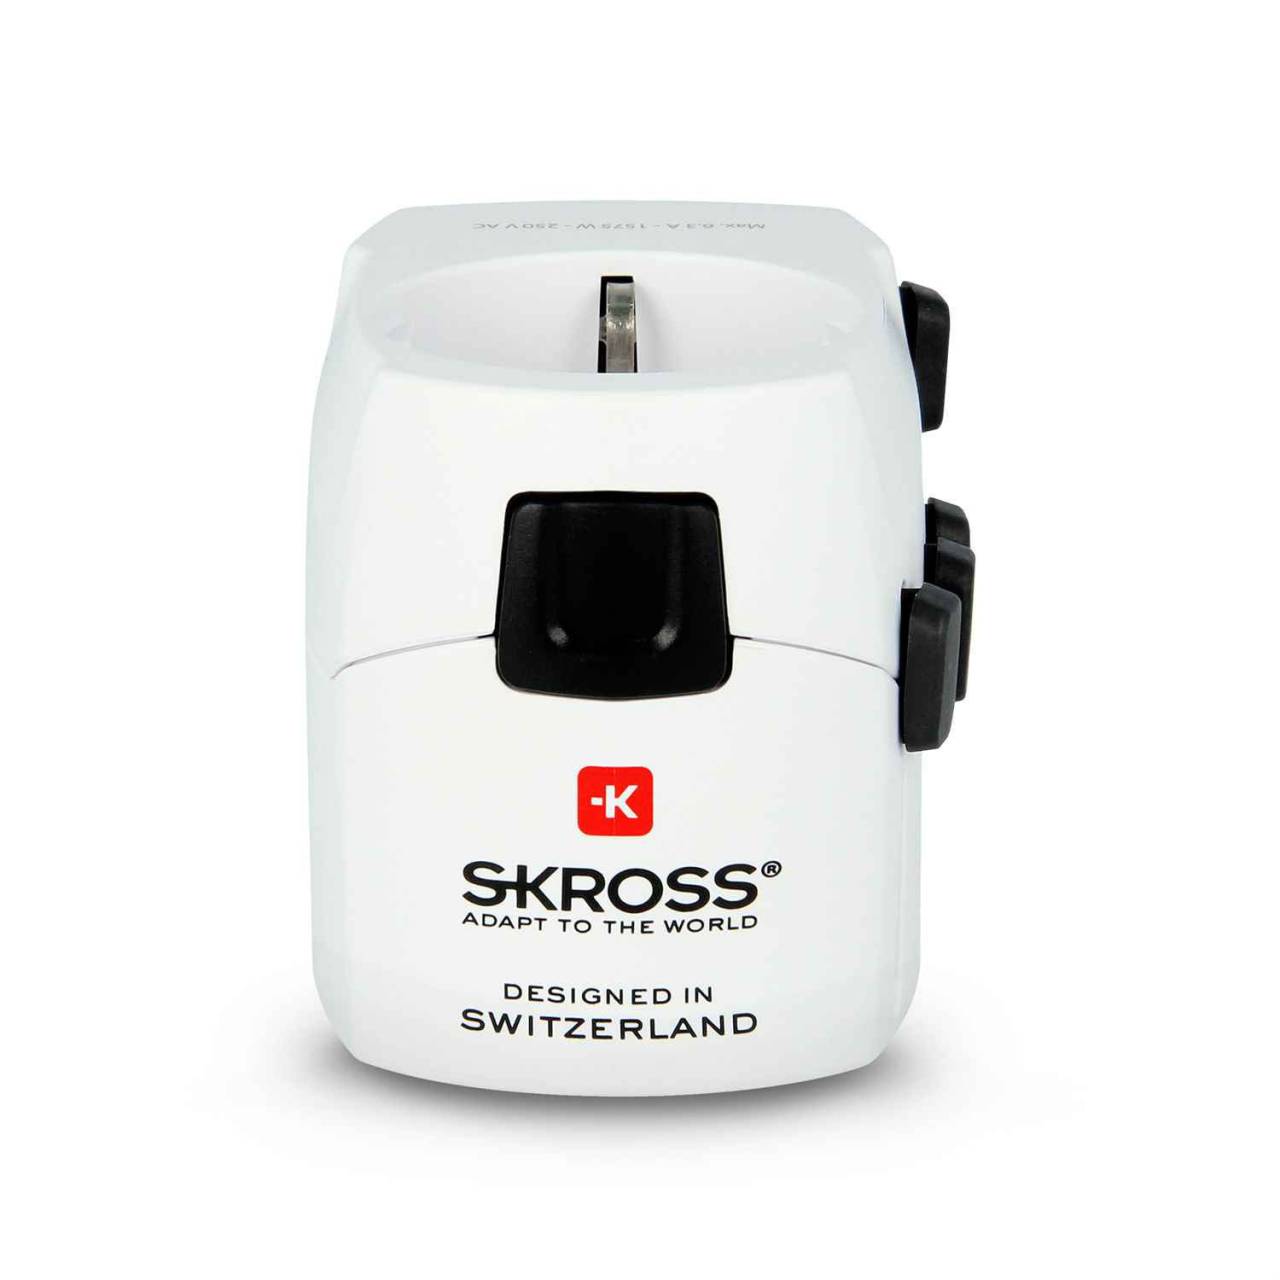 SKROSS Reiseadapter – PRO für 110+ Länder, passend für viele Geräte, Weltreise-Serie